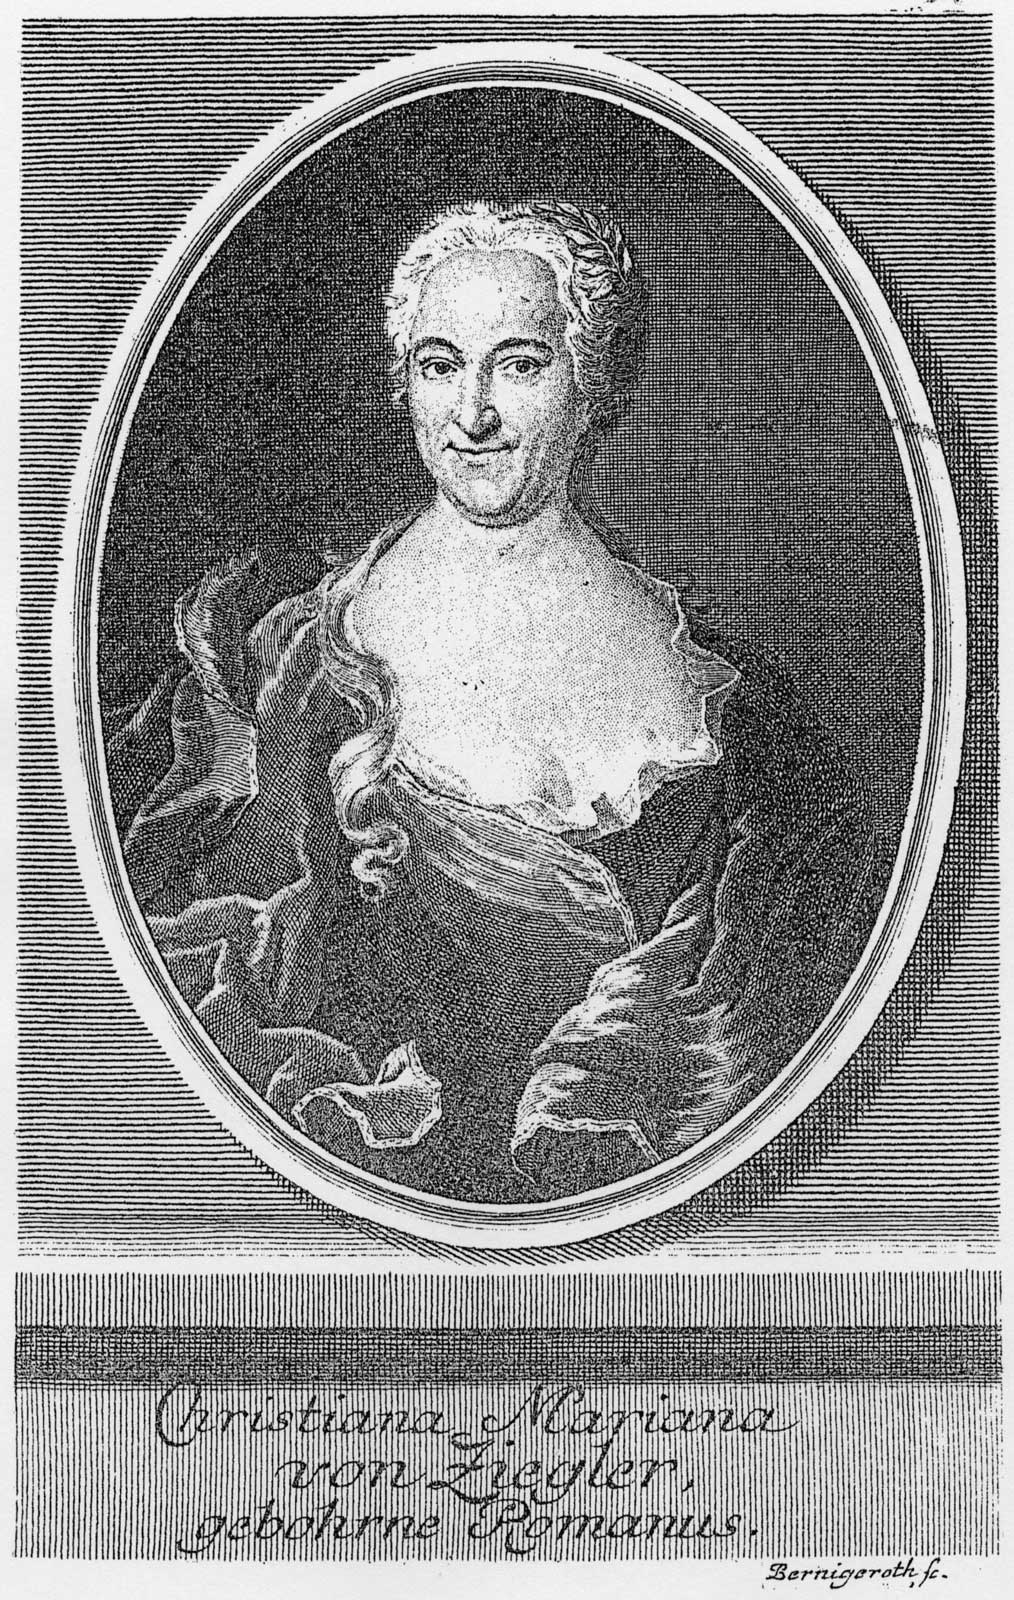 A contemporary etching of Christiana Mariana von Ziegler (1695-1760), the author of the libretto for Ihr werdet weinen und heulen, BWV 103.